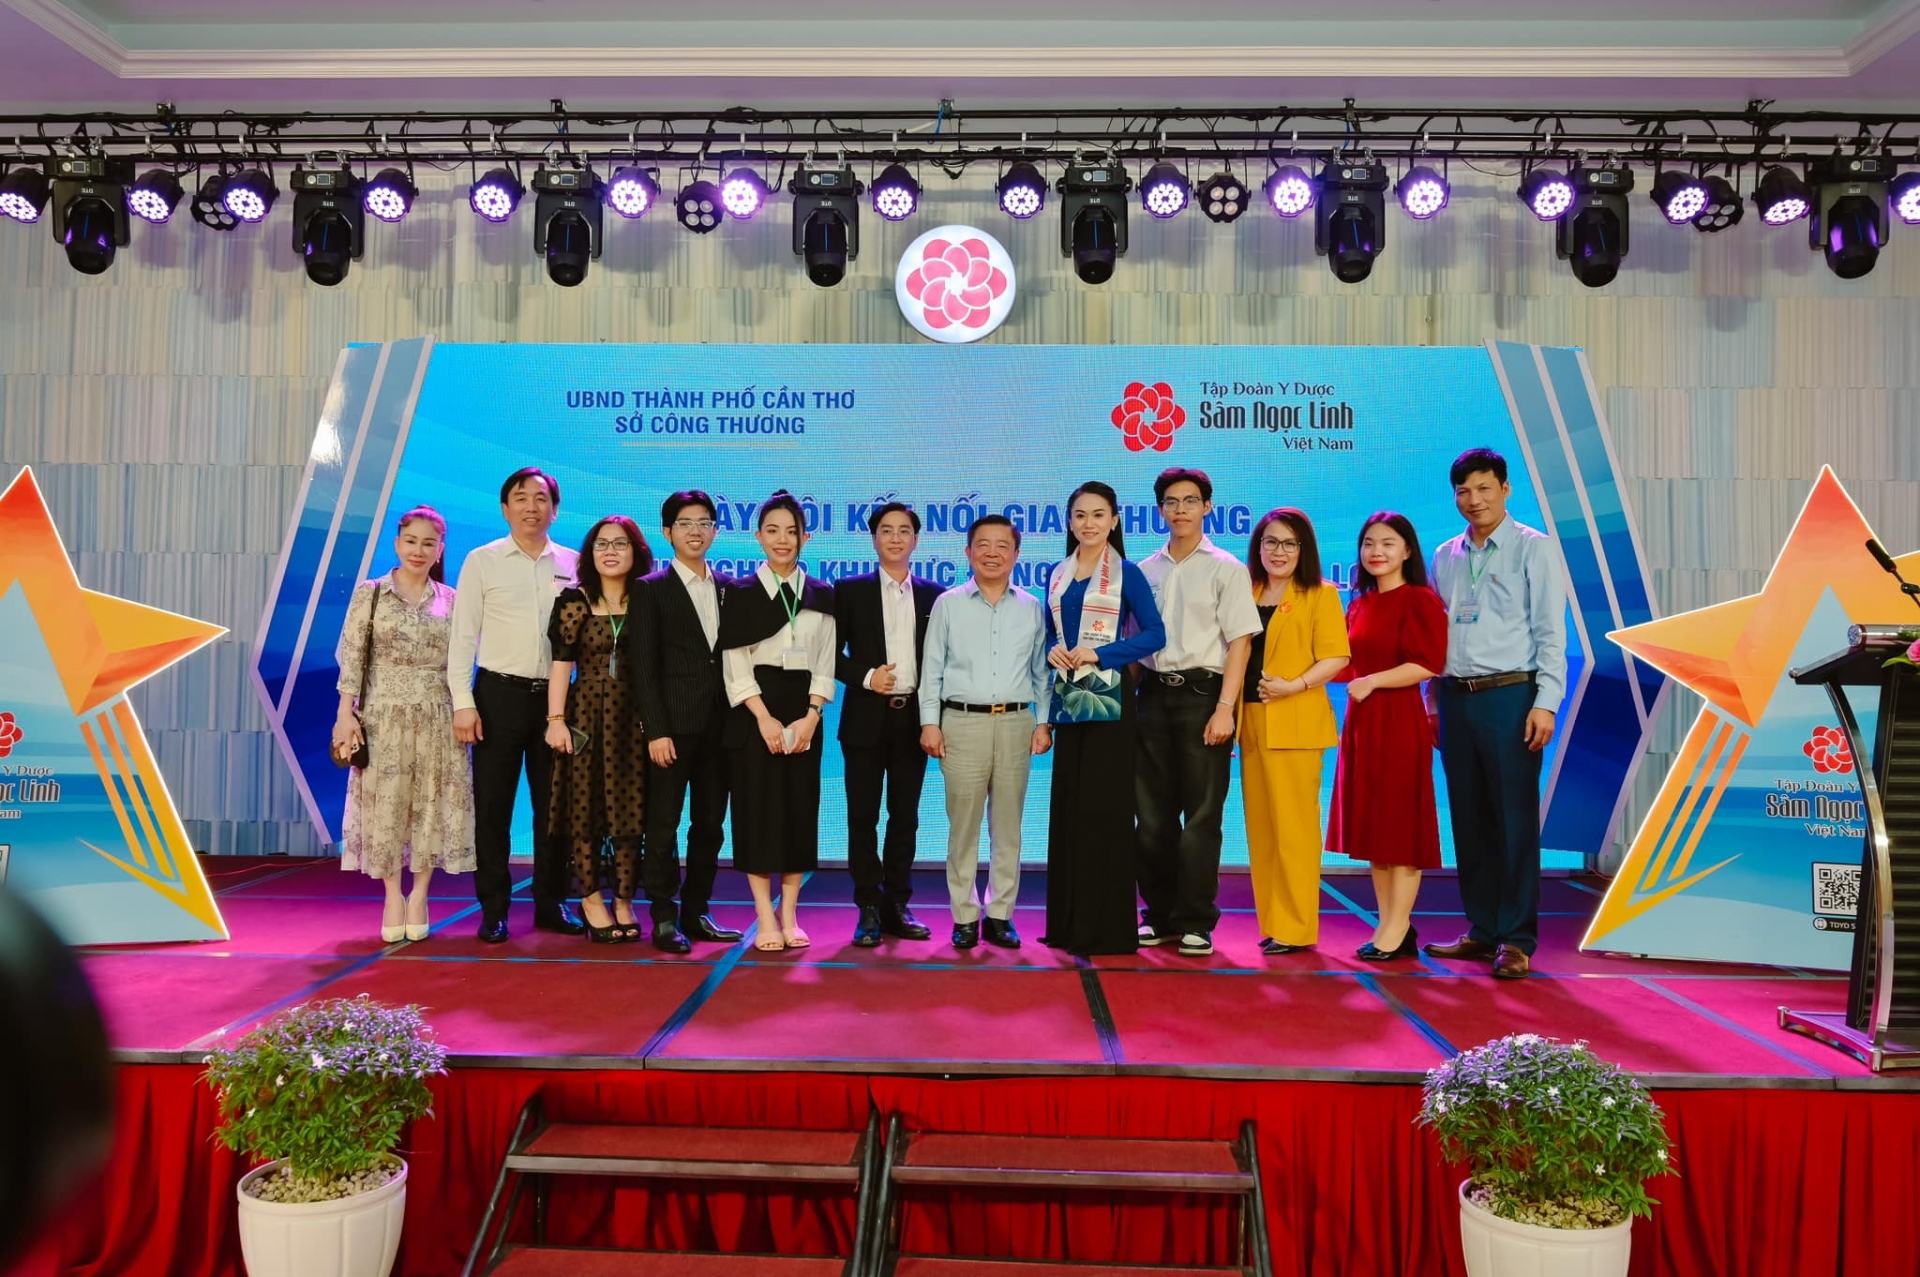 Tập đoàn Y dược sâm Ngọc Linh Việt Nam: Đẩy mạnh kết nối giao thương sâm Ngọc Linh ở khu vực miền Tây Nam bộ